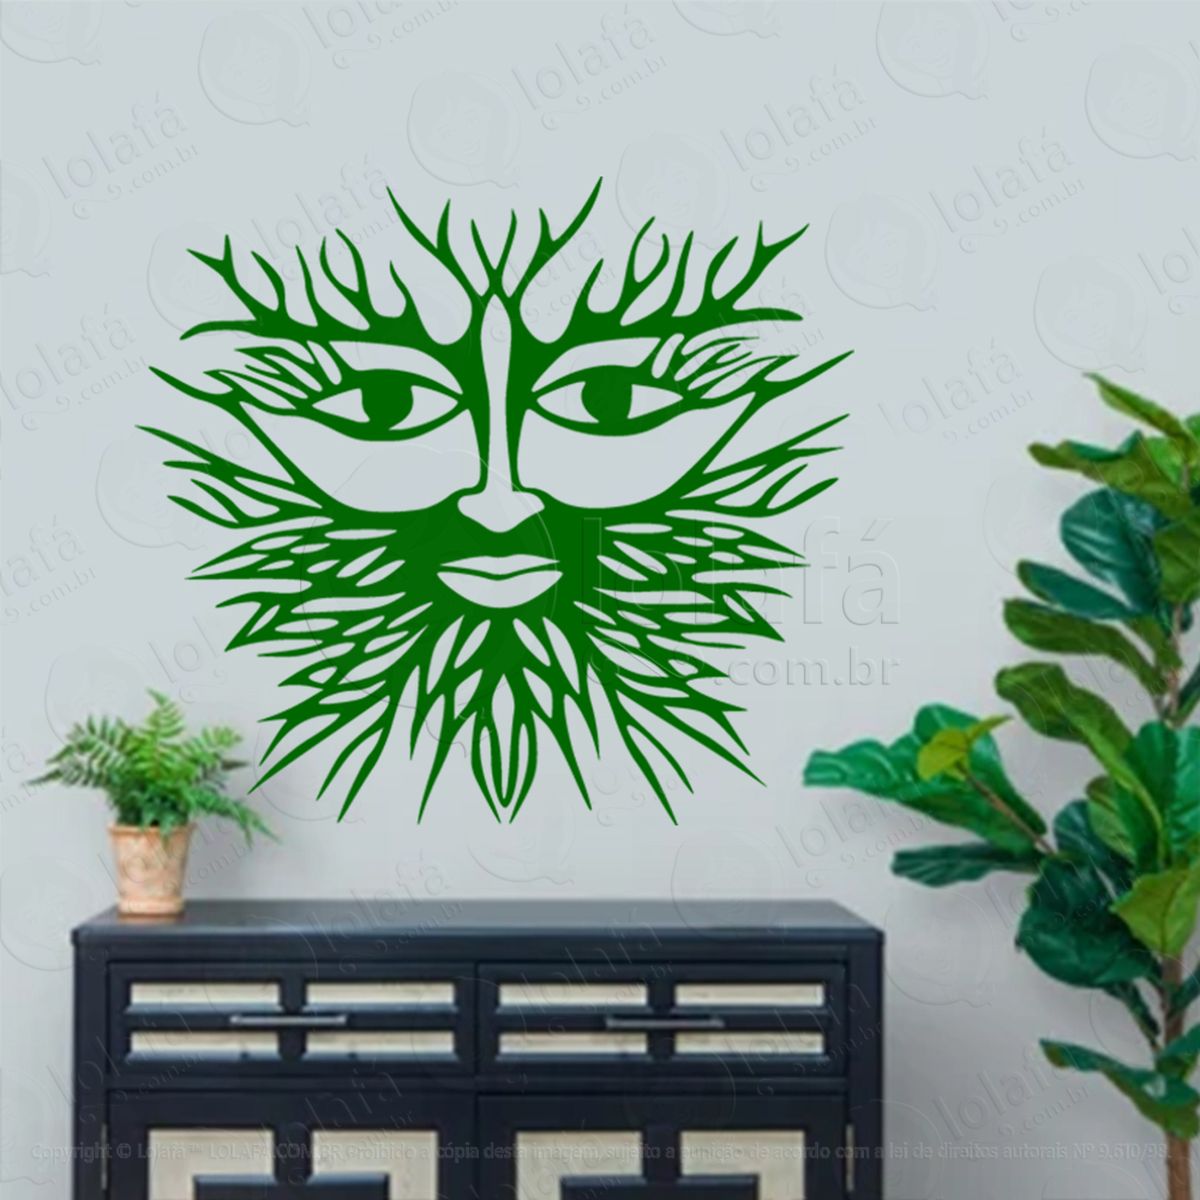 face homem verde green man face adesivo de parede decorativo para casa, sala, quarto, vidro e altar ocultista - mod:179